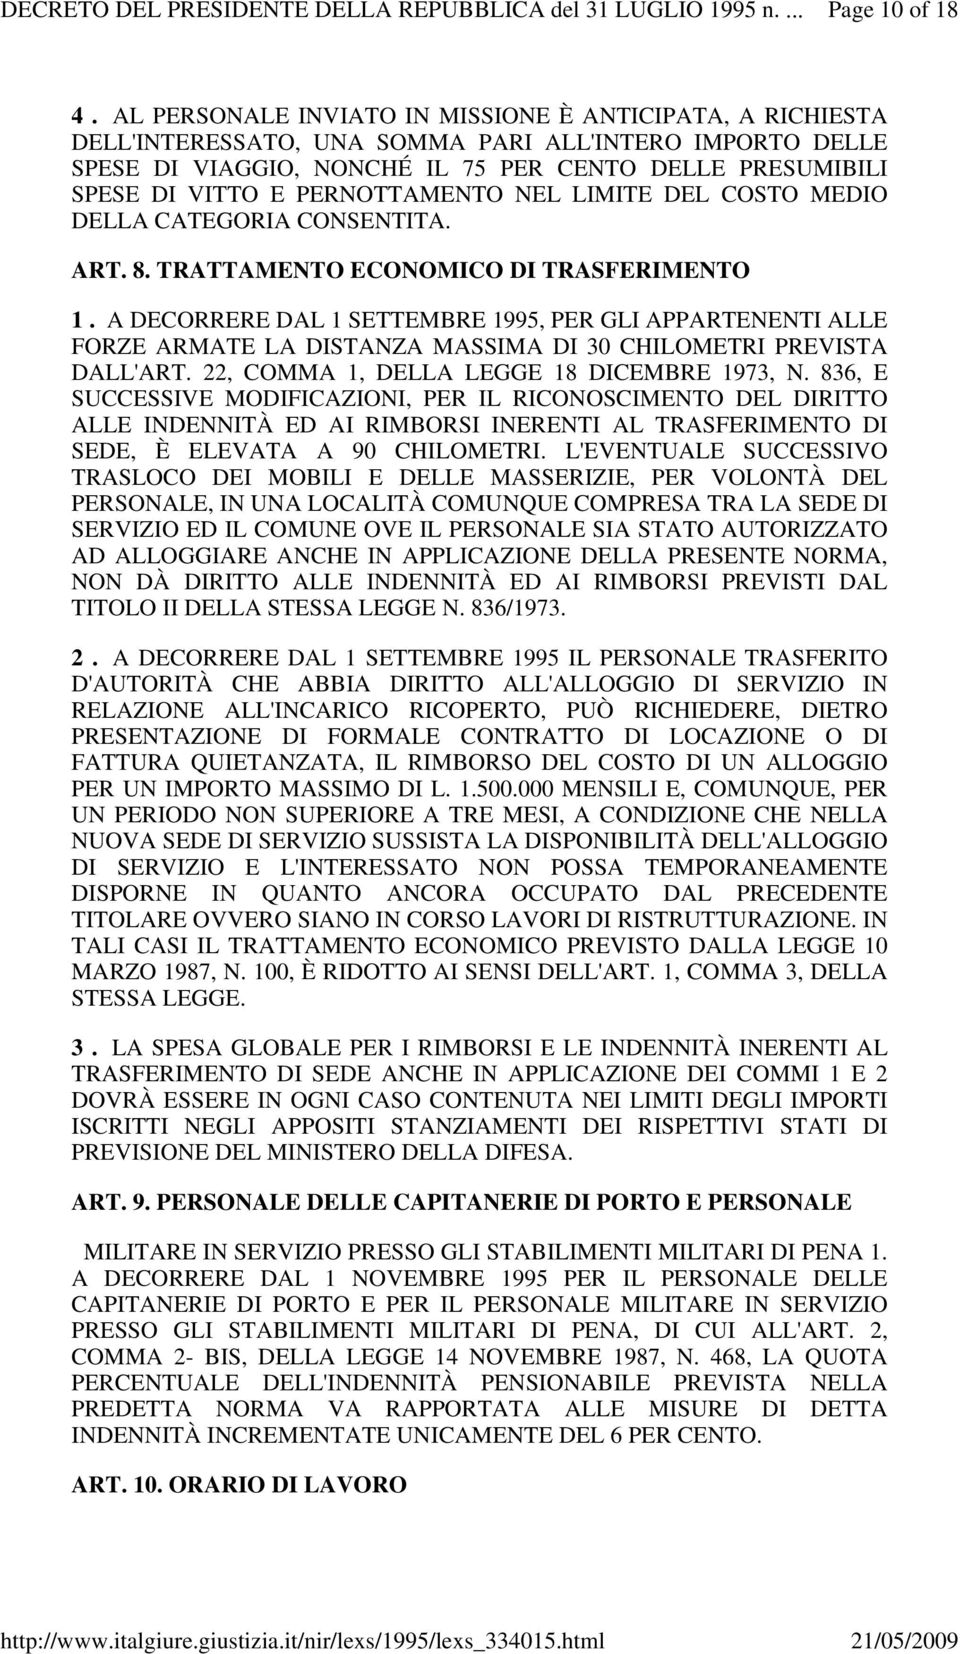 PERNOTTAMENTO NEL LIMITE DEL COSTO MEDIO DELLA CATEGORIA CONSENTITA. ART. 8. TRATTAMENTO ECONOMICO DI TRASFERIMENTO 1.